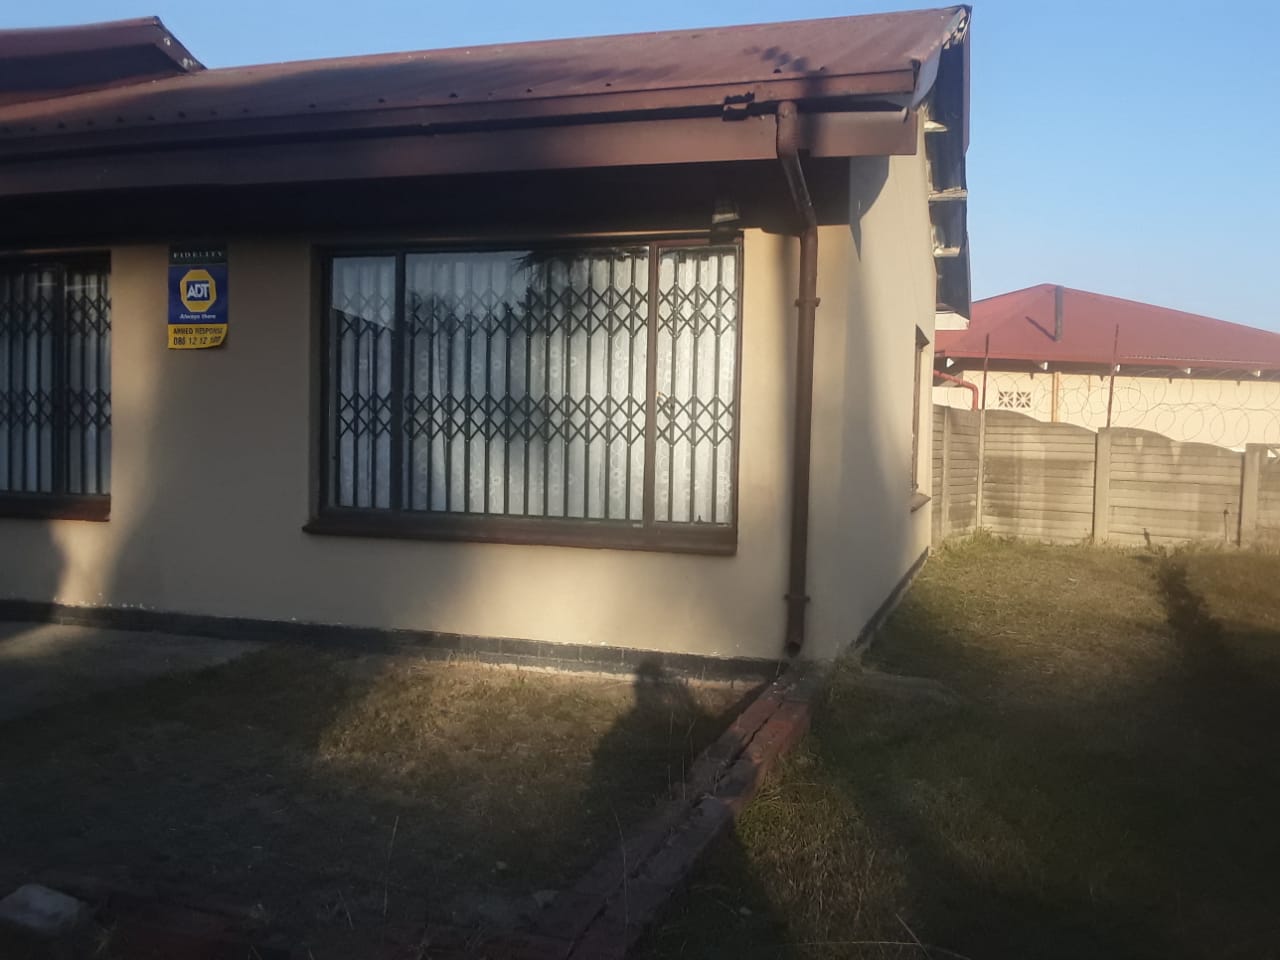  Bedroom Property for Sale in Arborpark KwaZulu-Natal